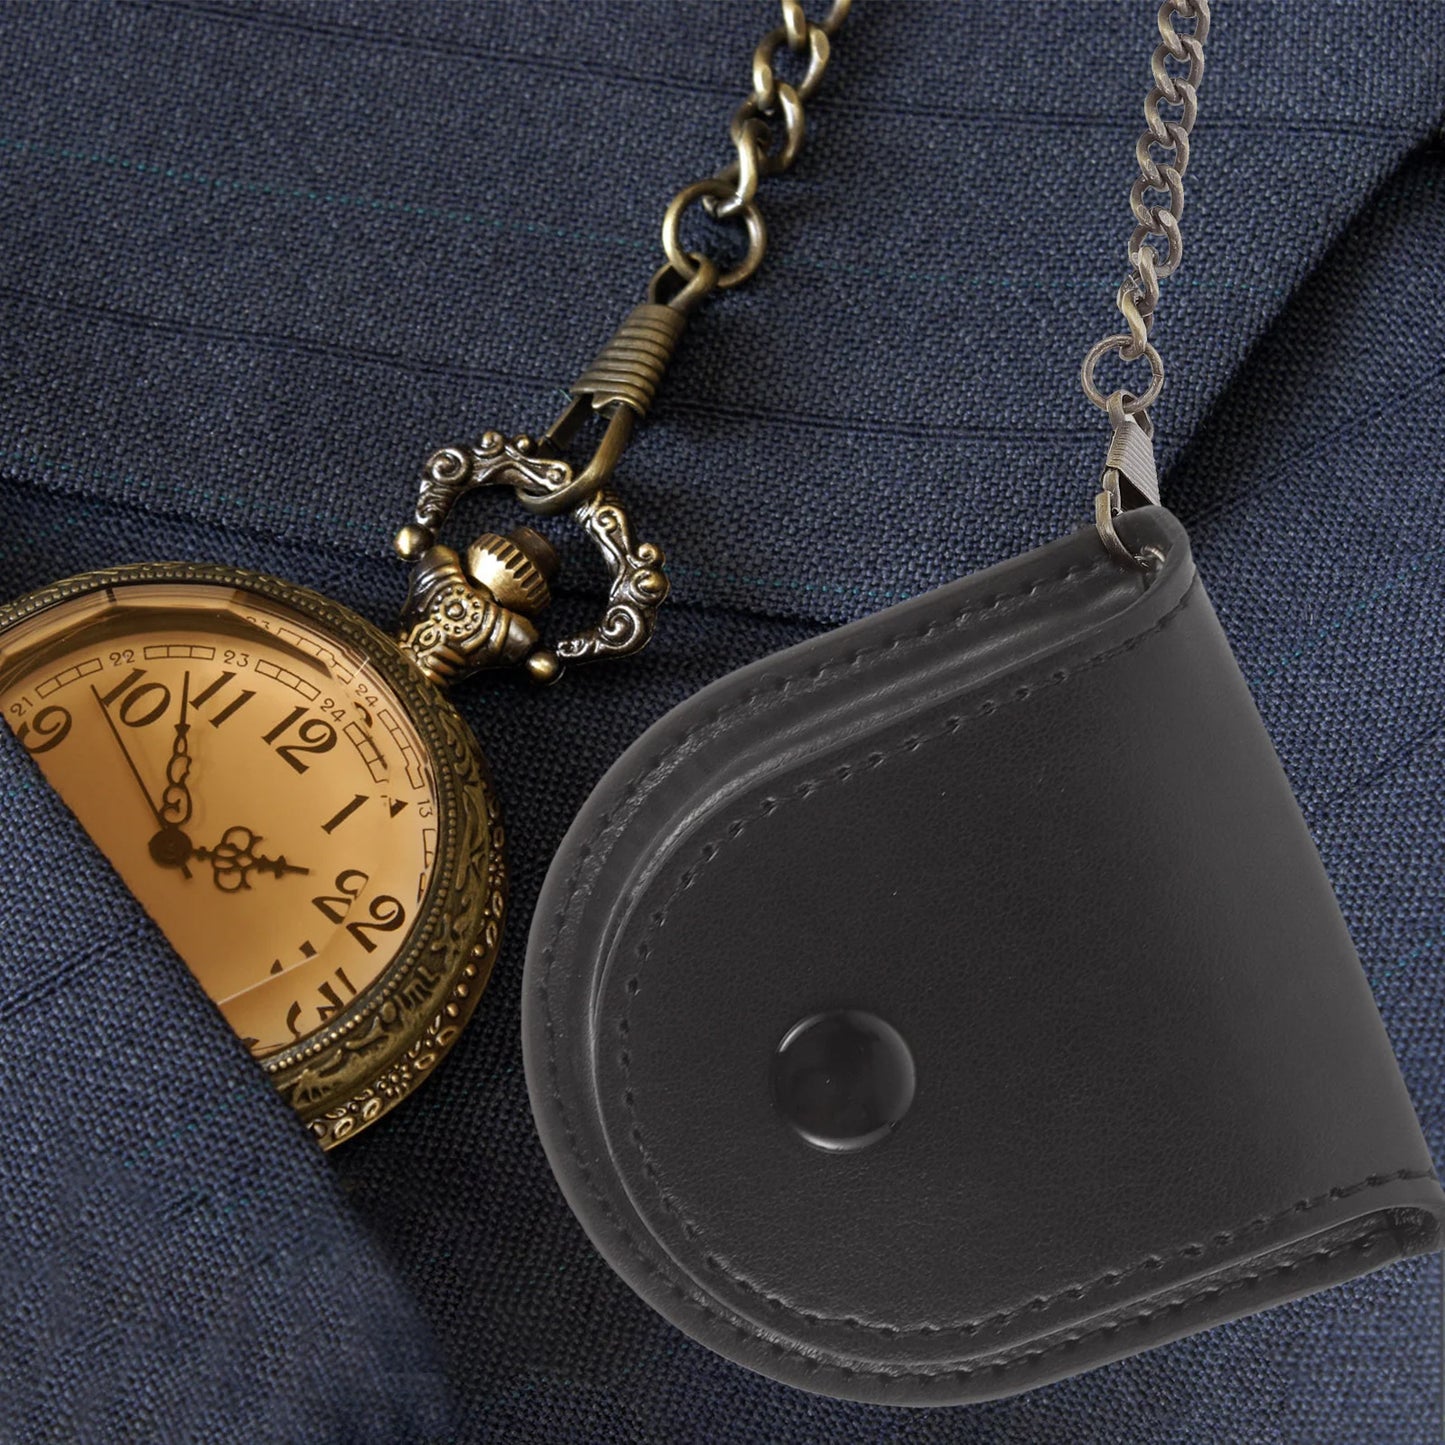 Men Wrist Watches Pocket Case Bag Chain Design Container Gift Pouch Holder Metal Pu Pouches Waist Elder Watch Pouch